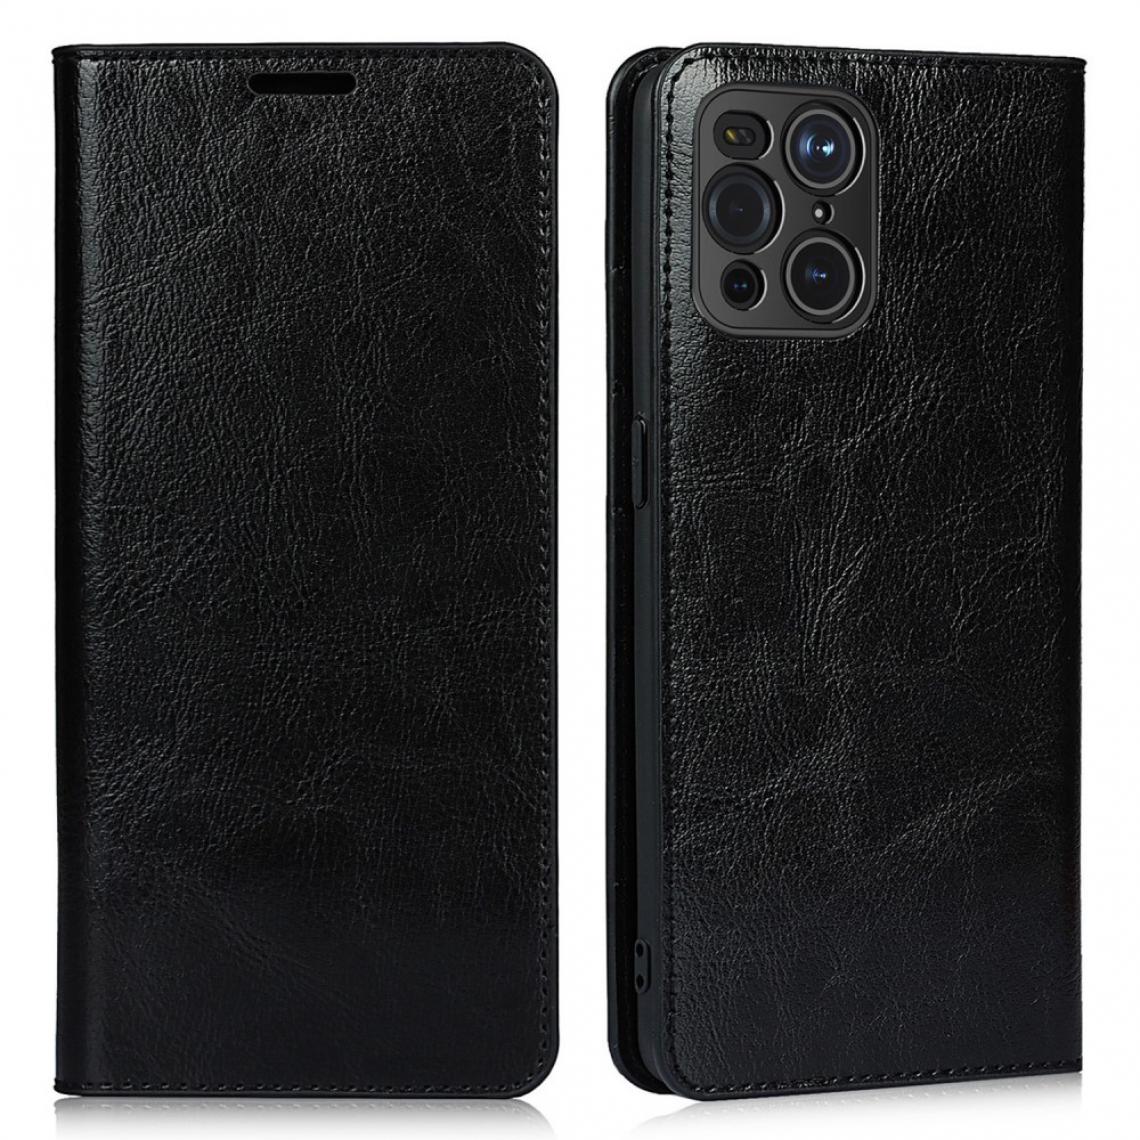 Other - Etui en cuir véritable Peau de cheval fou noir pour votre Oppo Find X3 - Coque, étui smartphone